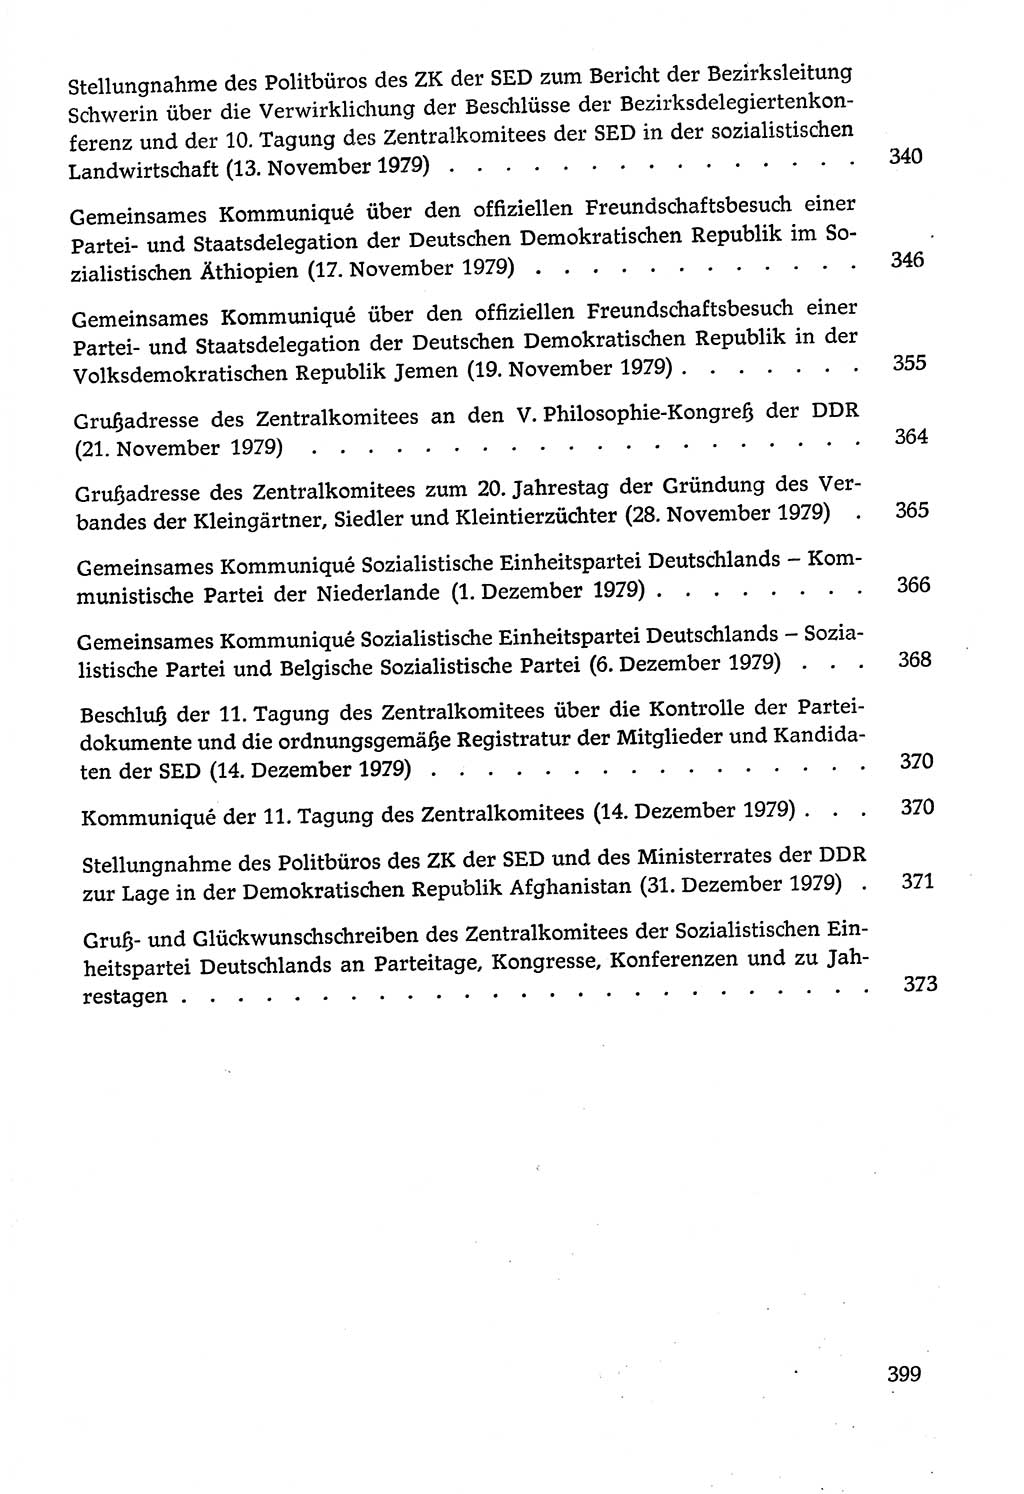 Dokumente der Sozialistischen Einheitspartei Deutschlands (SED) [Deutsche Demokratische Republik (DDR)] 1978-1979, Seite 399 (Dok. SED DDR 1978-1979, S. 399)